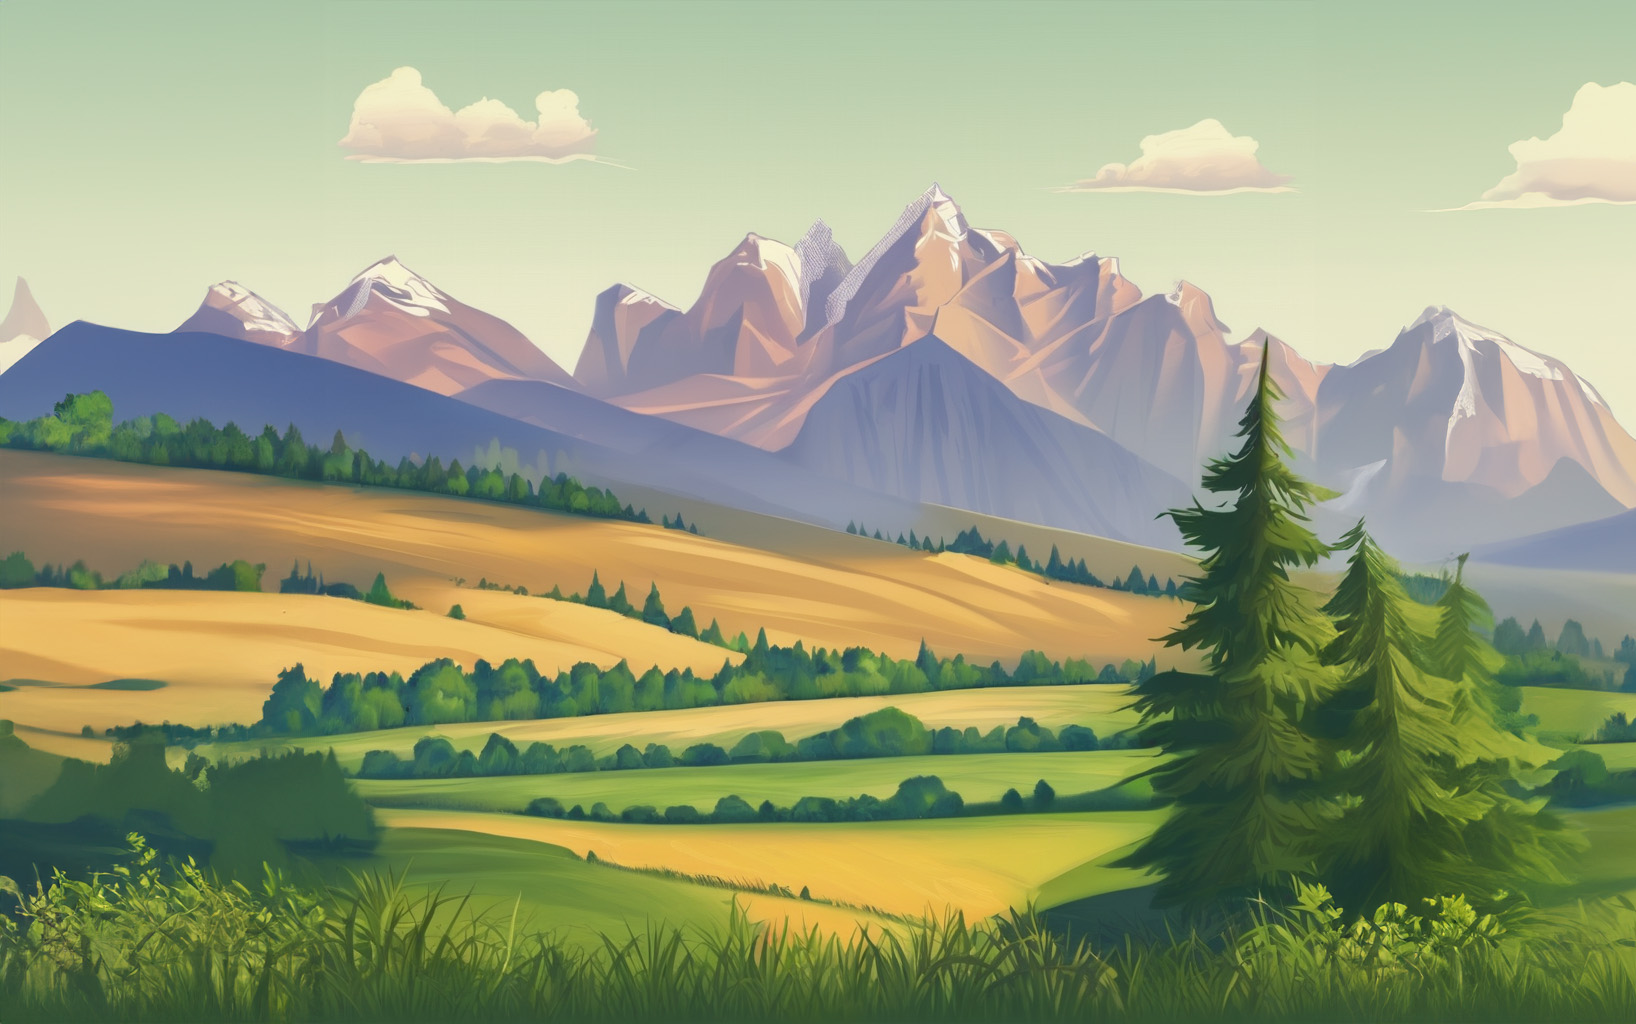 KI-generiertes Bild: Illustration einer sommerlichen Landschaft mit Bergen im Hintergrund